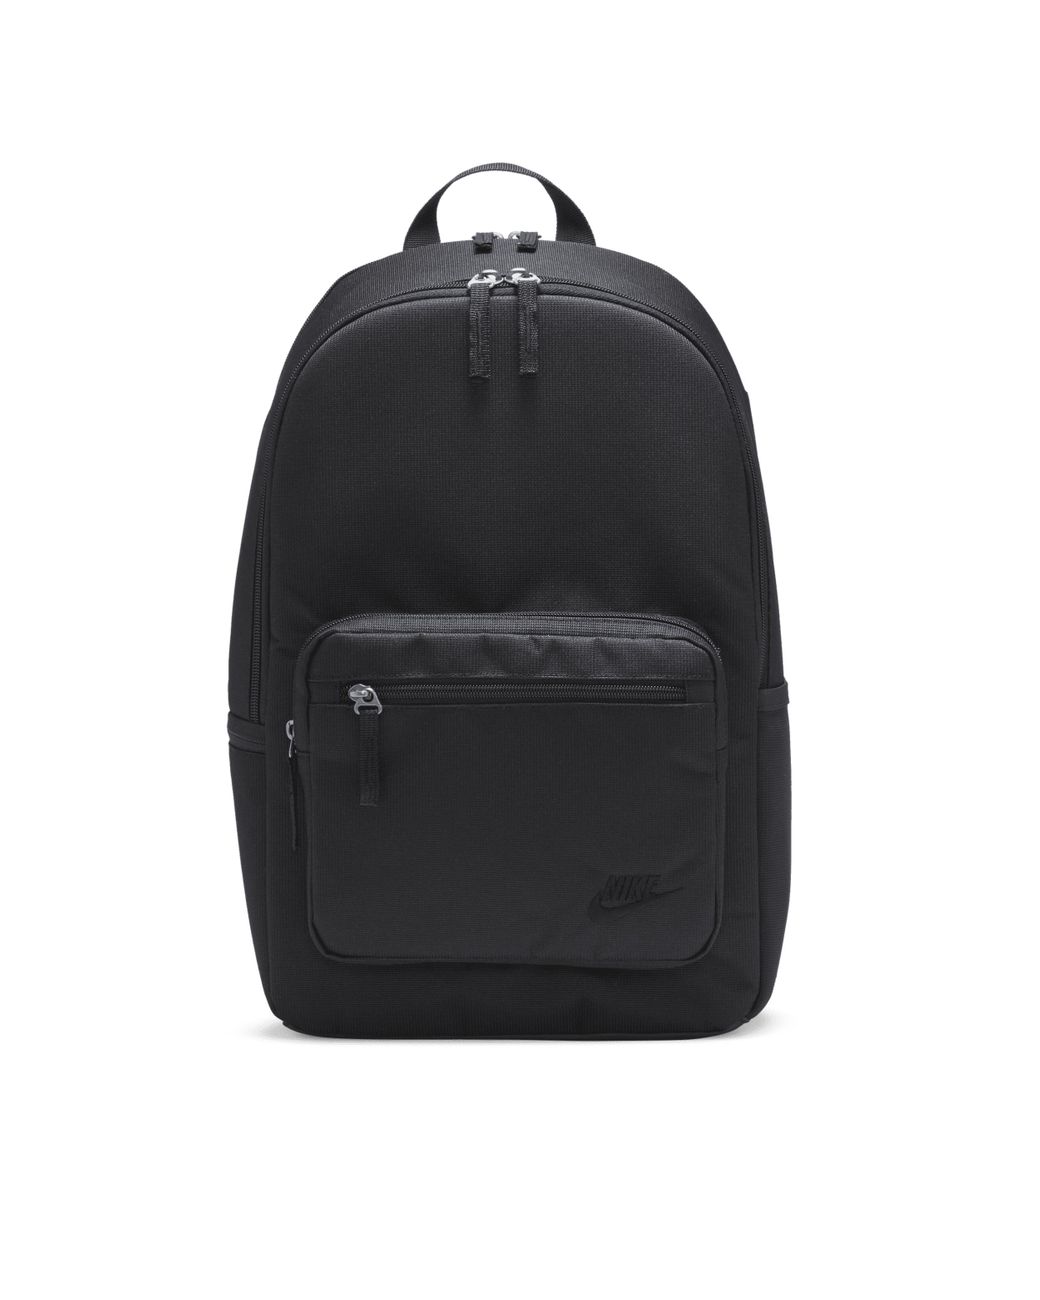 Nike  Bags  Nike Stormfit Adv Waterproof Elite Utility Speed Black  Backpack  Poshmark